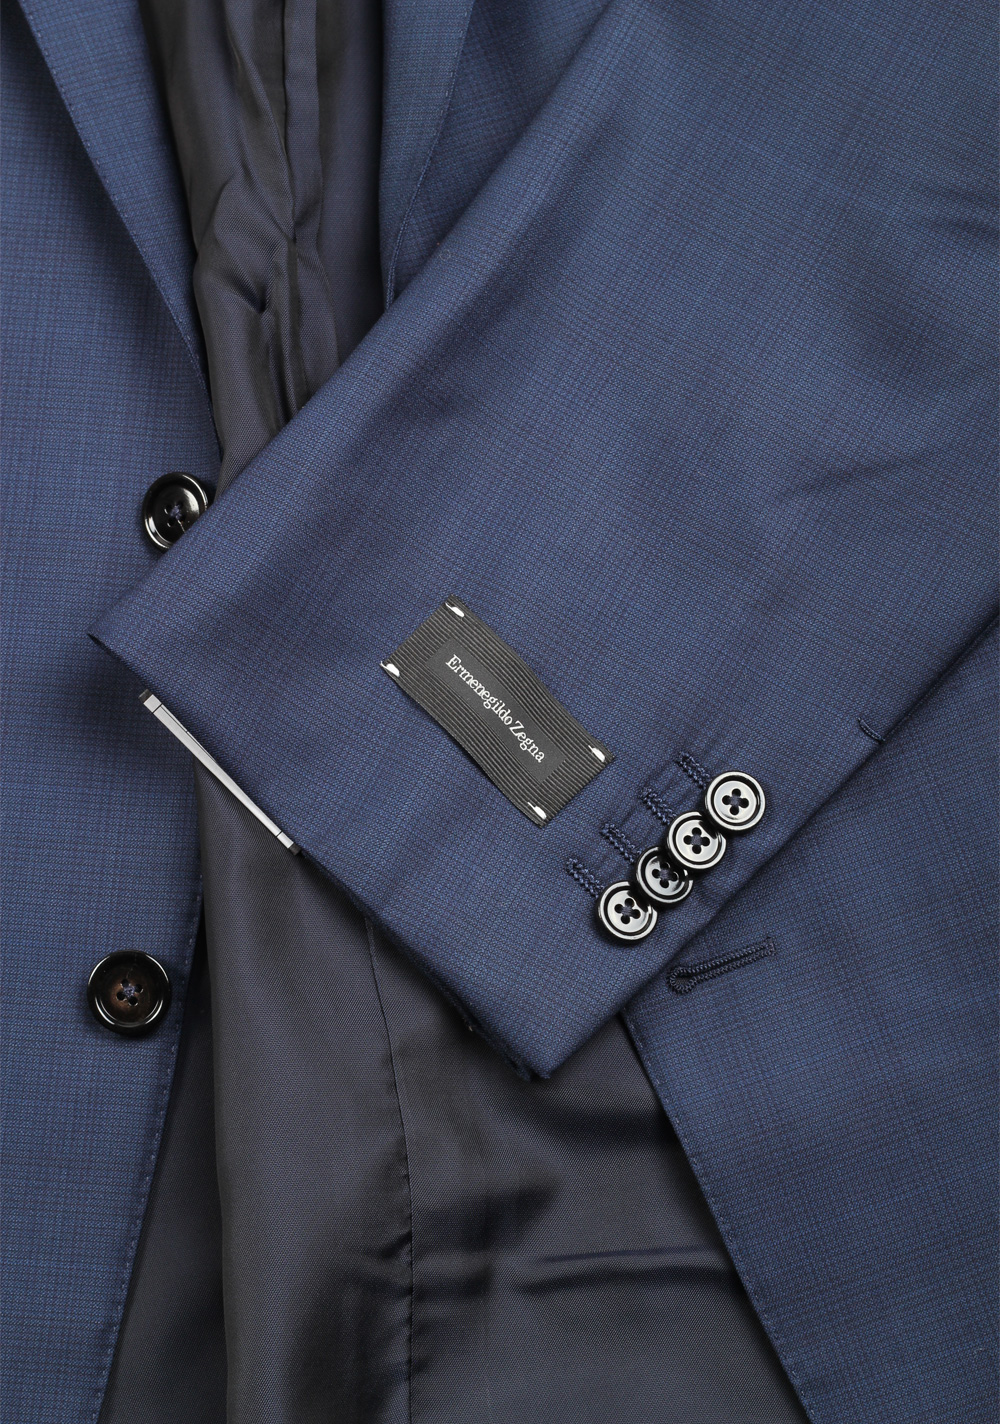 ZEGNA Milano 15 Milmil 15 Blue Suit Size 58 / 48R U.S. | Costume Limité